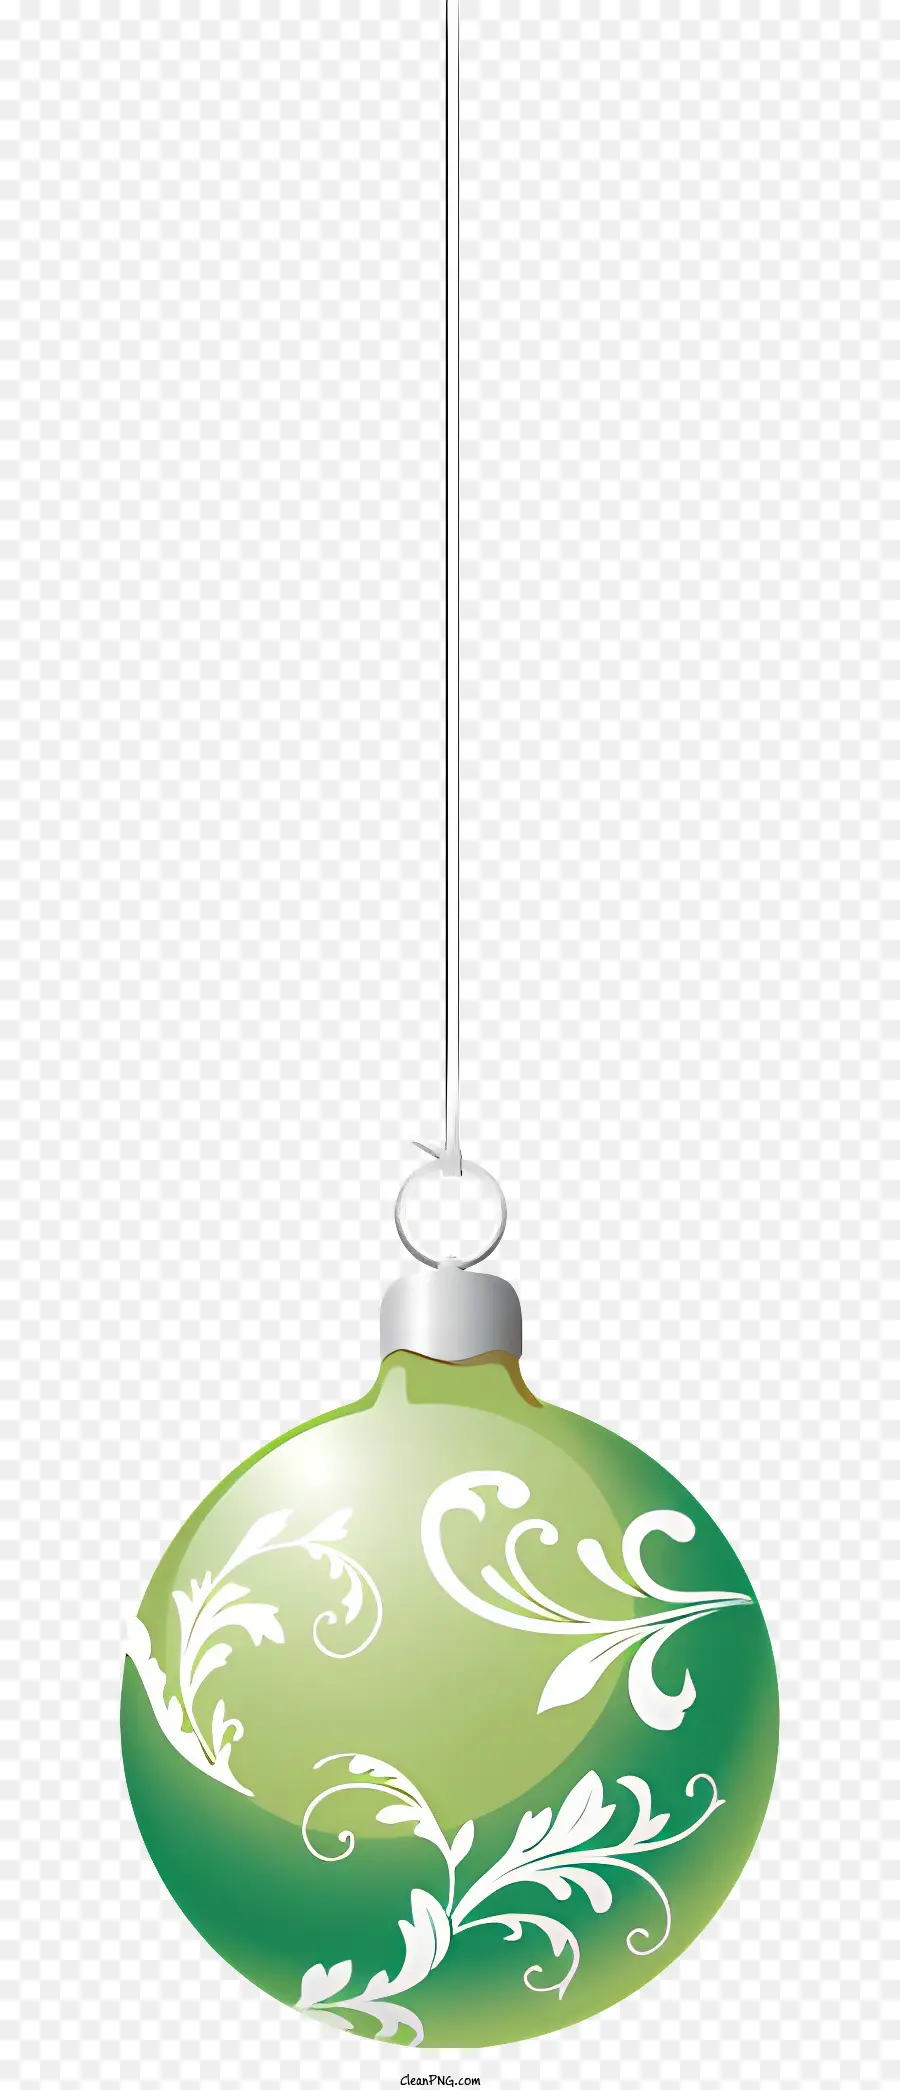 Grüne Ornament wirbelnde Muster hängender Orament Grüne Dekoration Runde Basis - Grüne Verzierungen hängen an der Kette an schwarzer Schnur